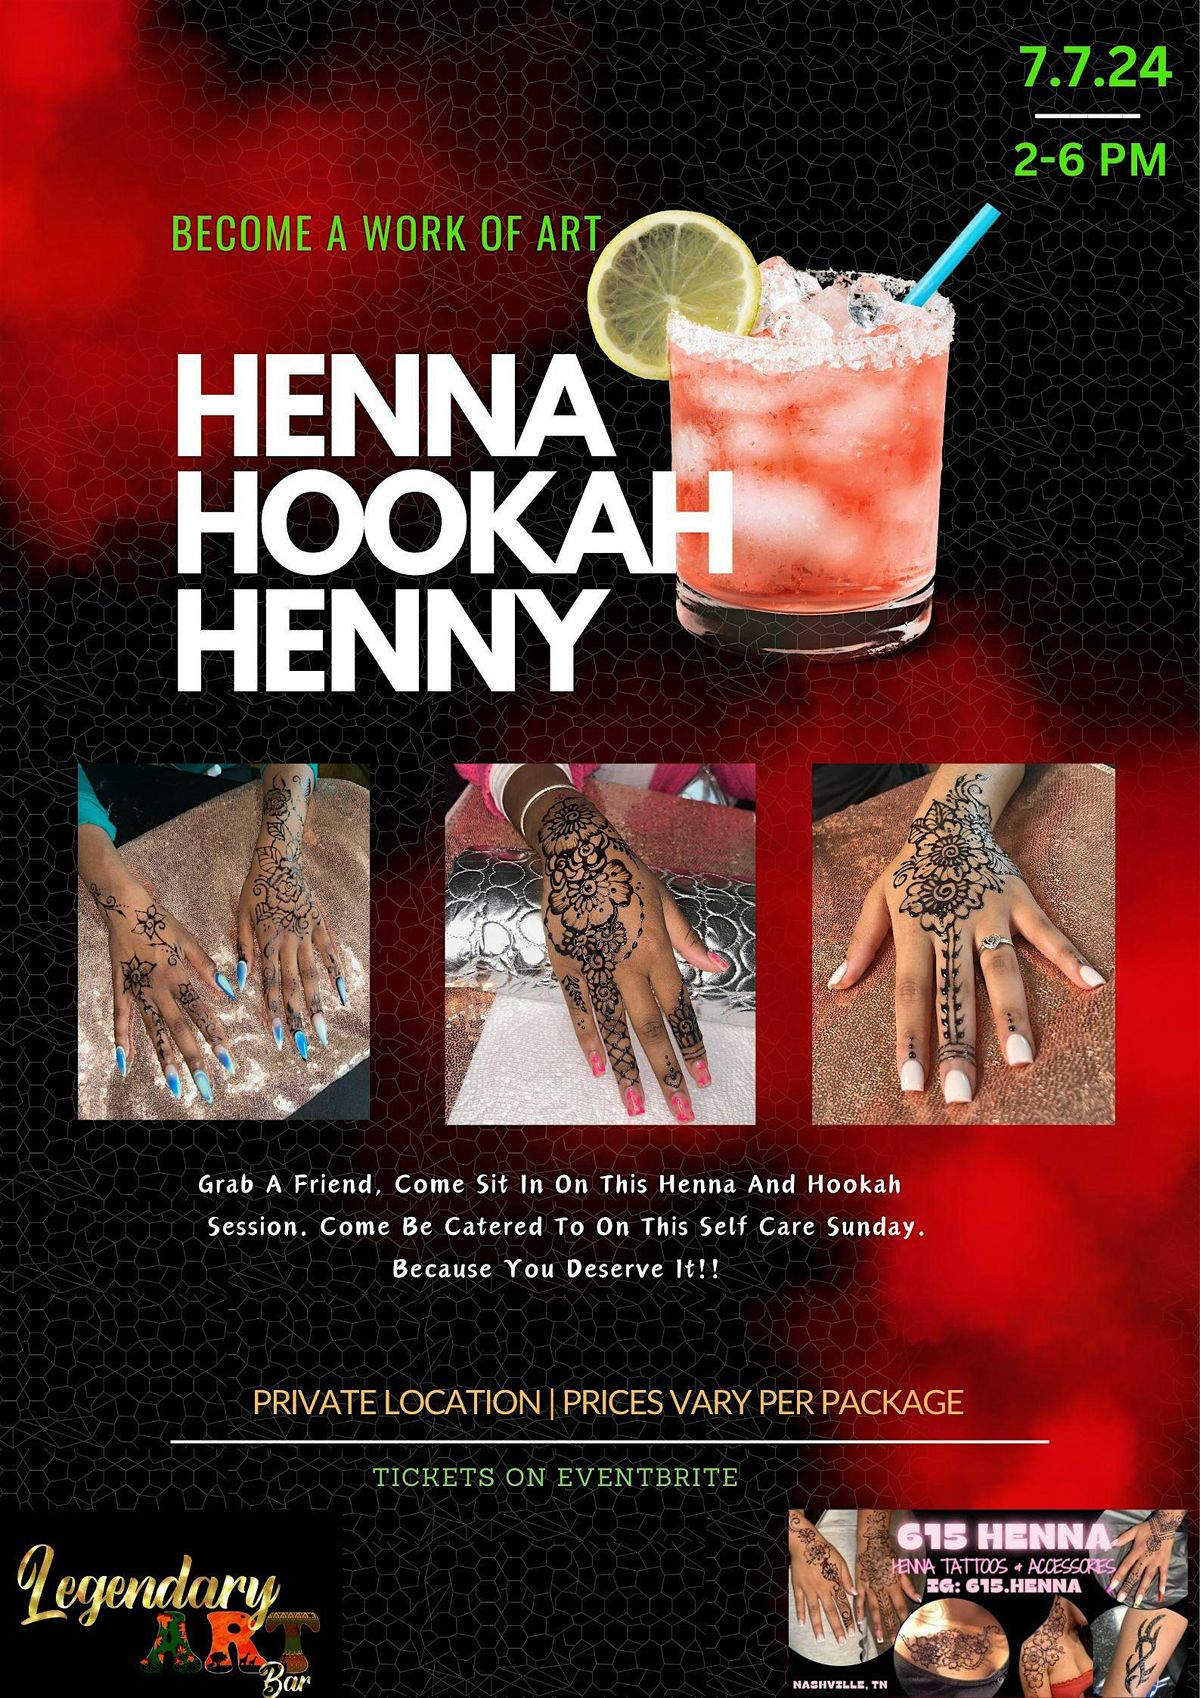 Henna, Hookah, Henny